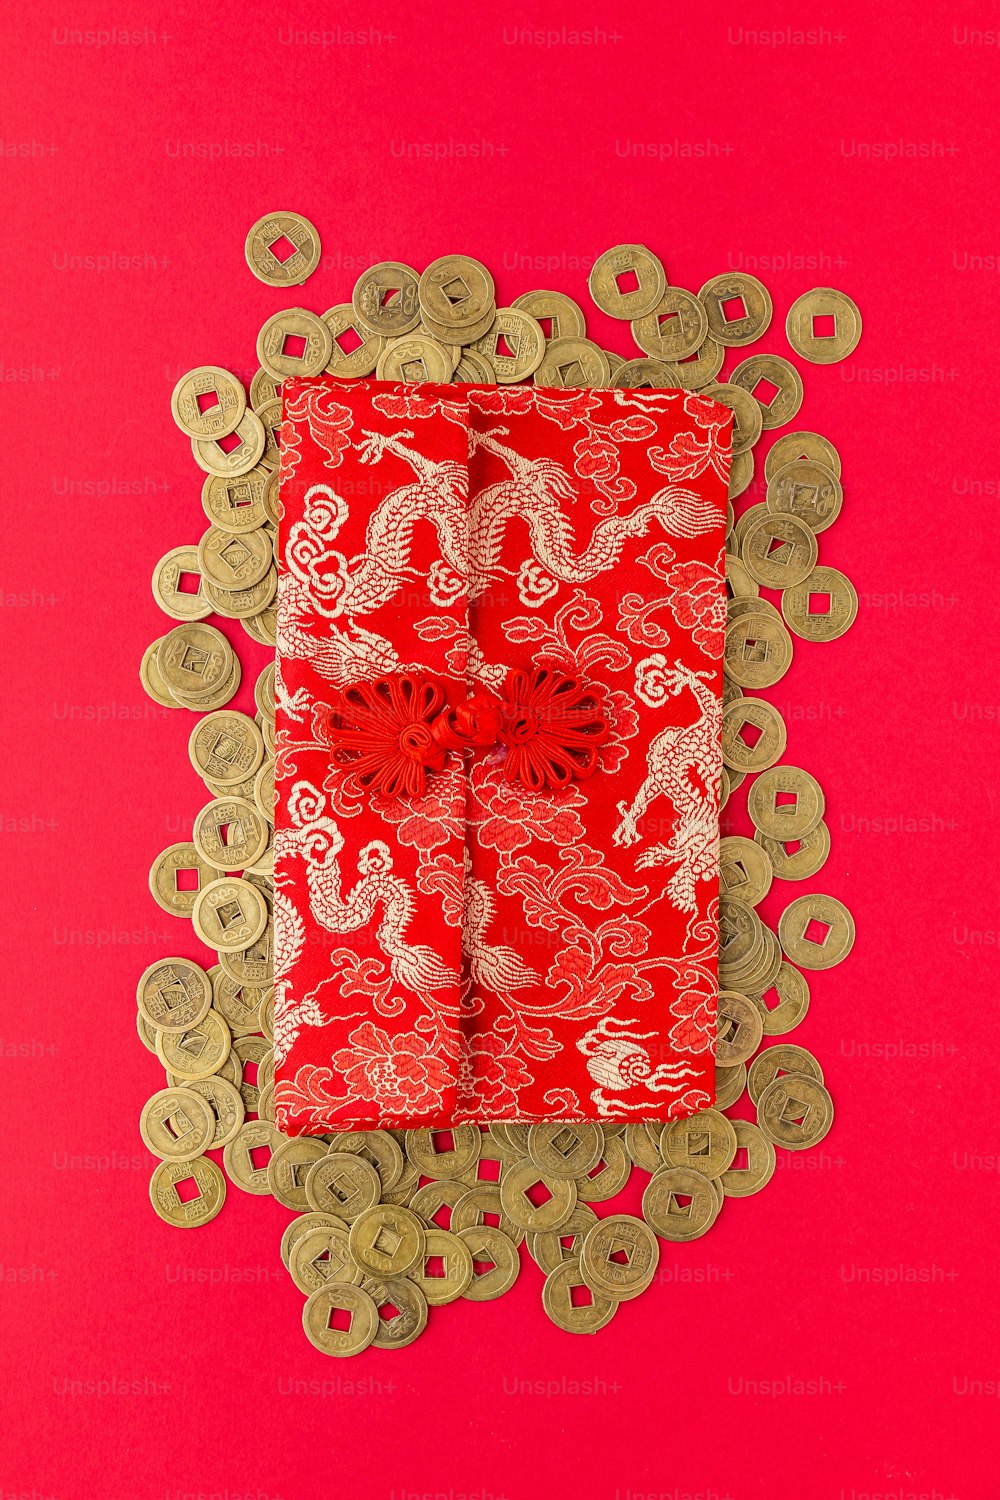 Un papier rouge et or avec un dragon dessus